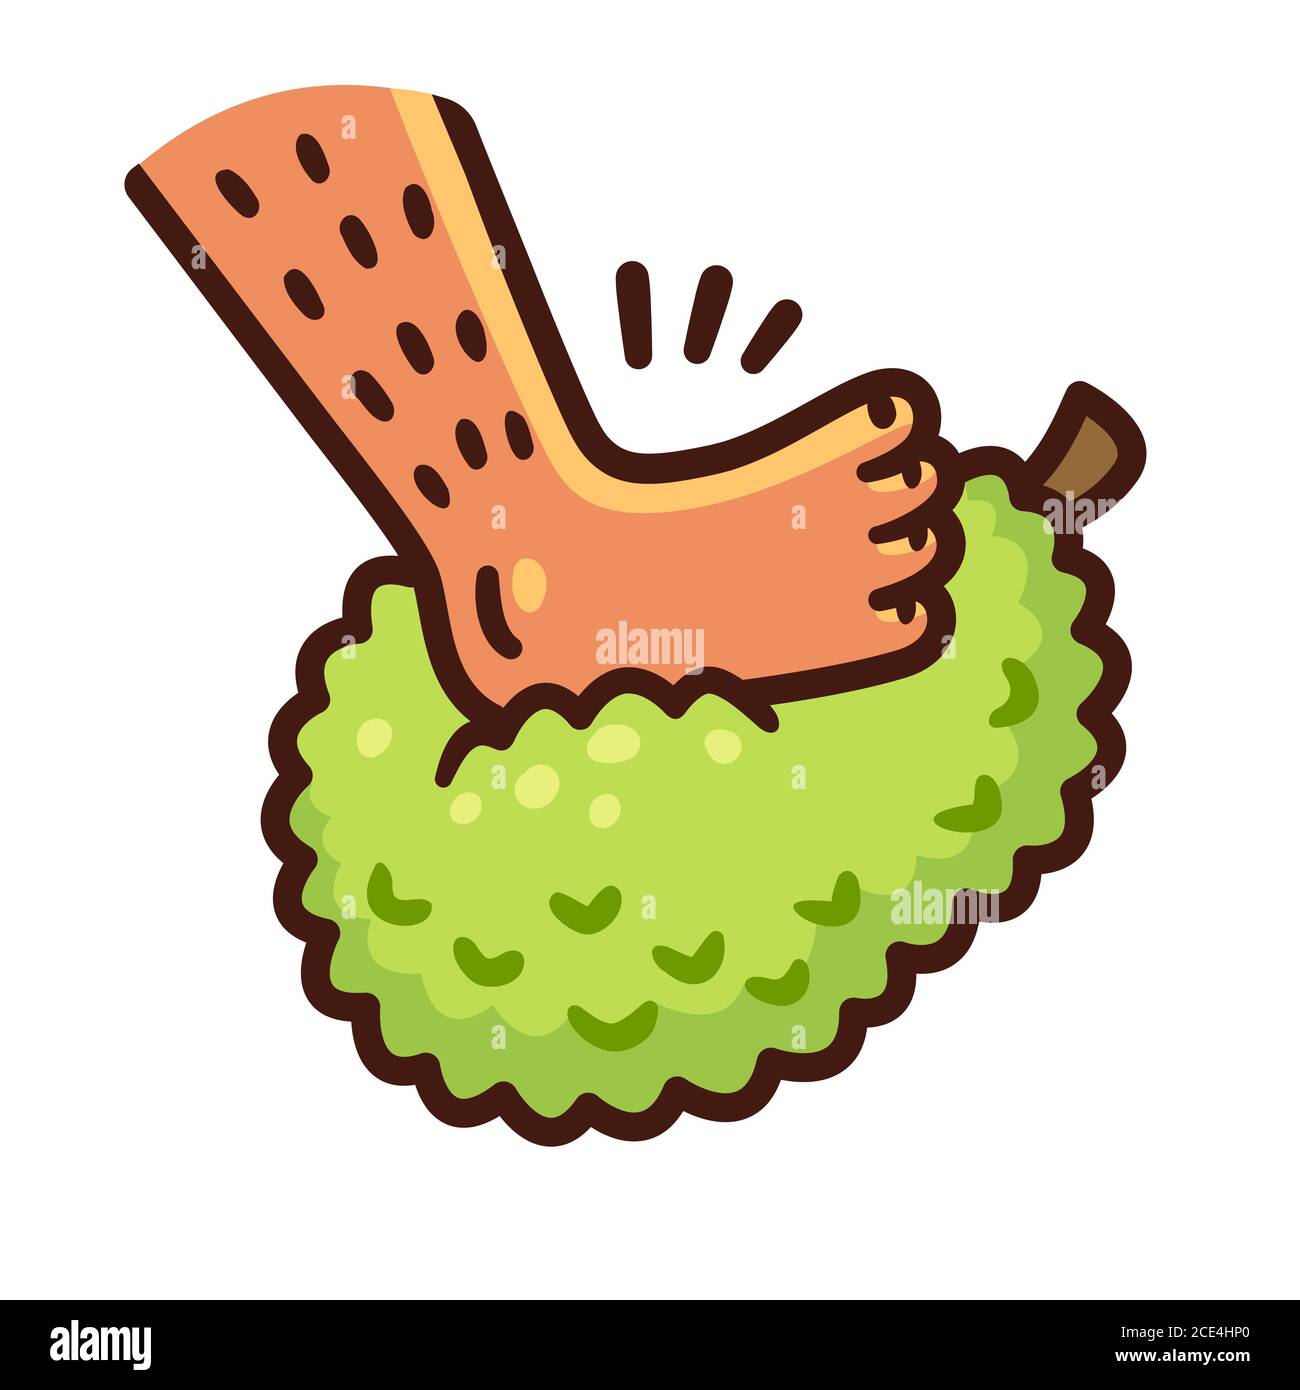 Pied de dessin animé sur le jackfruit. Enfiar o pé na jaca (mettre son pied dans un jackfruit en portugais) expression brésilienne pour être ivre. Clip vectoriel Illustration de Vecteur